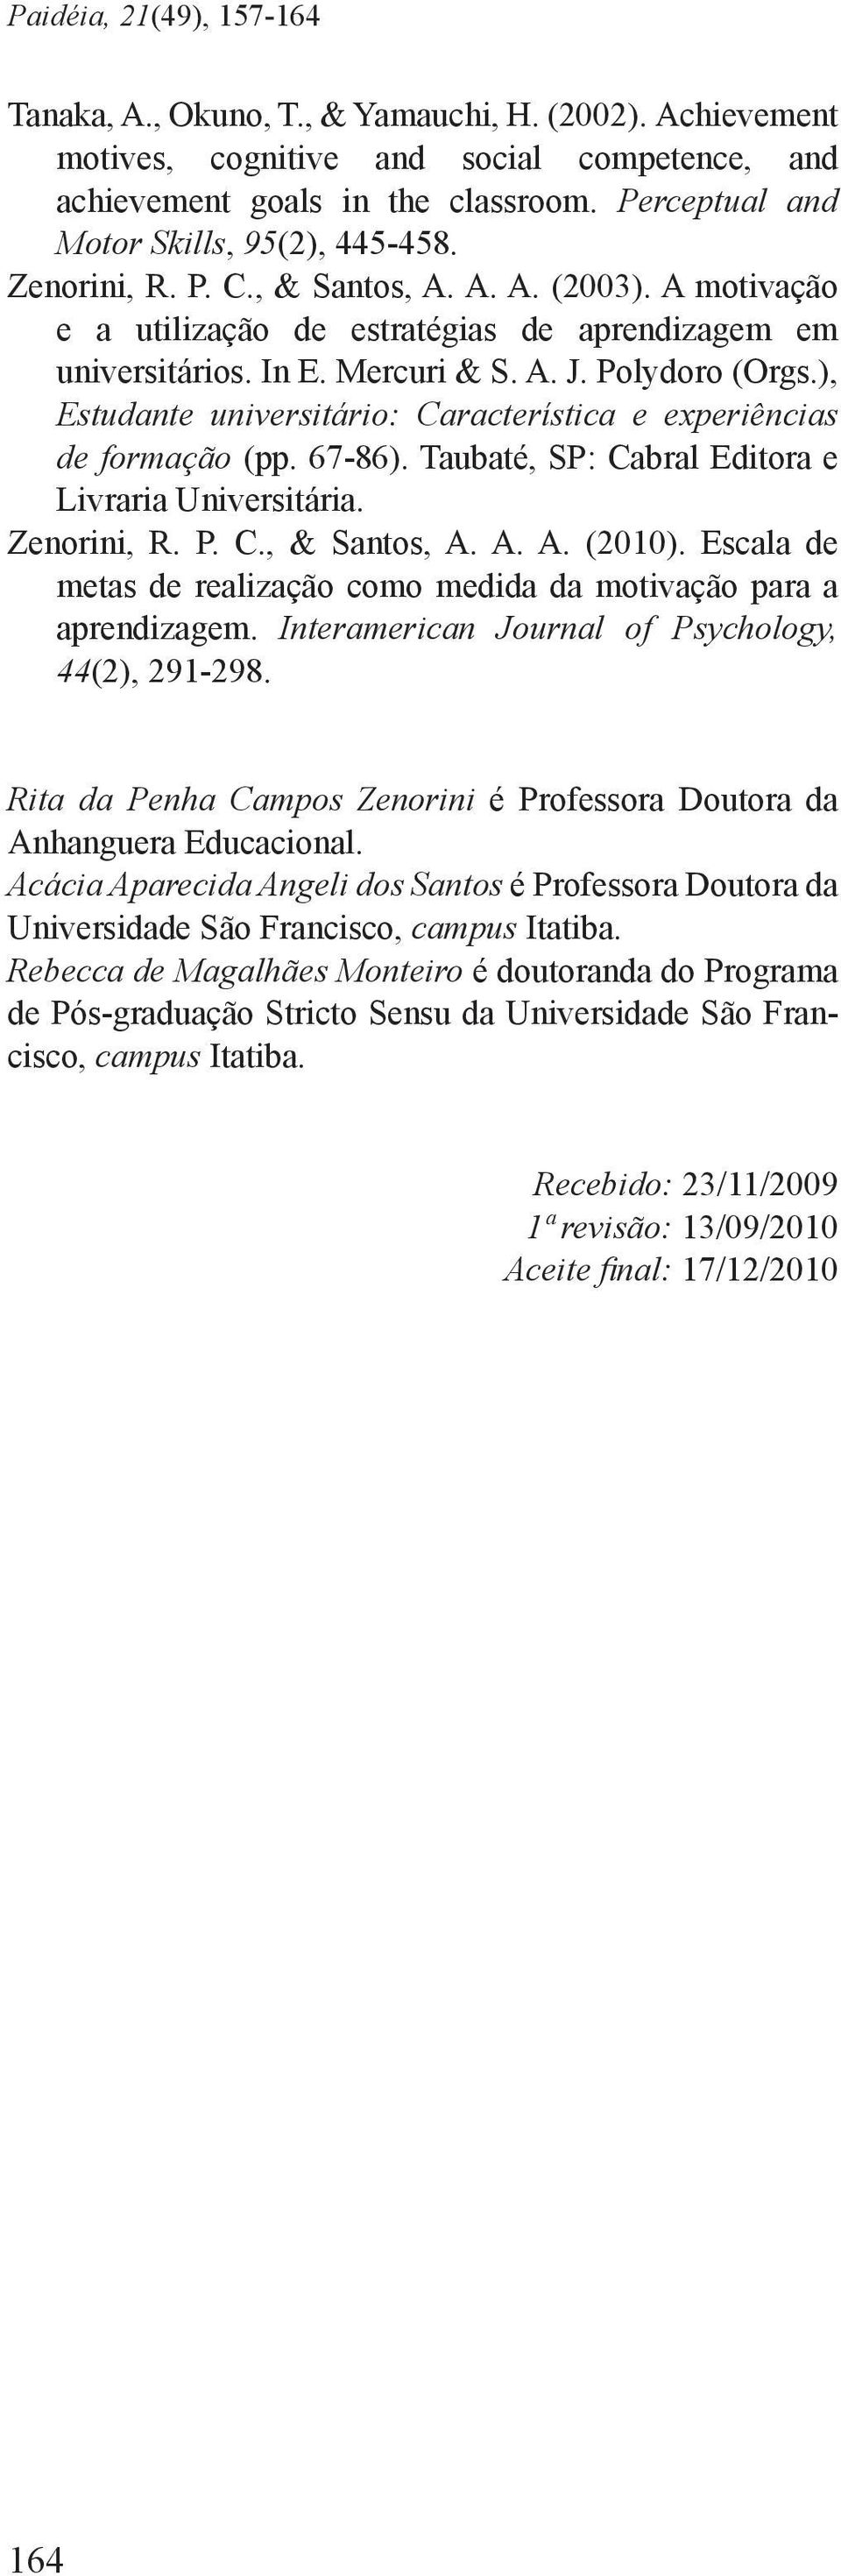 Polydoro (Orgs.), Estudante universitário: Característica e experiências de formação (pp. 67-86). Taubaté, SP: Cabral Editora e Livraria Universitária. Zenorini, R. P. C., & Santos, A. A. A. (2010).